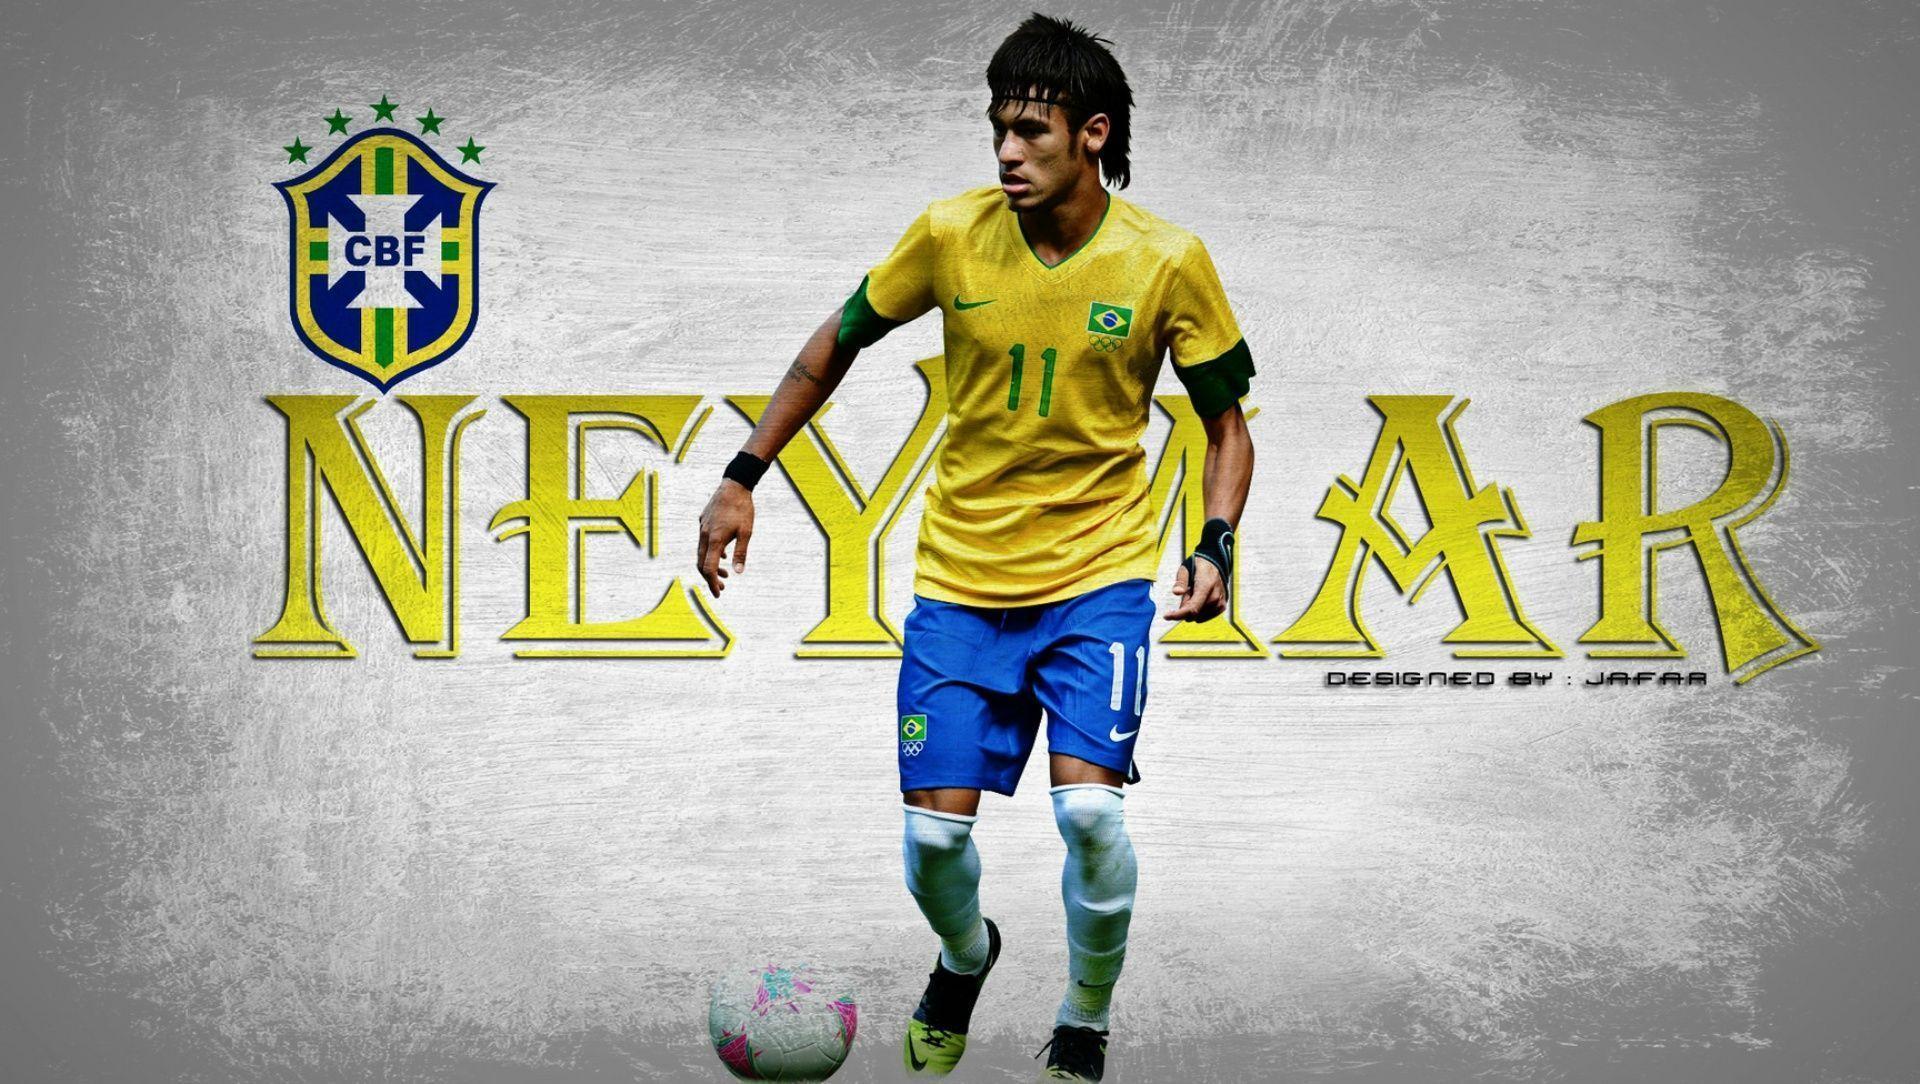 Neymar Wallpaper Picture Brazil Football Player 2014 Neymar